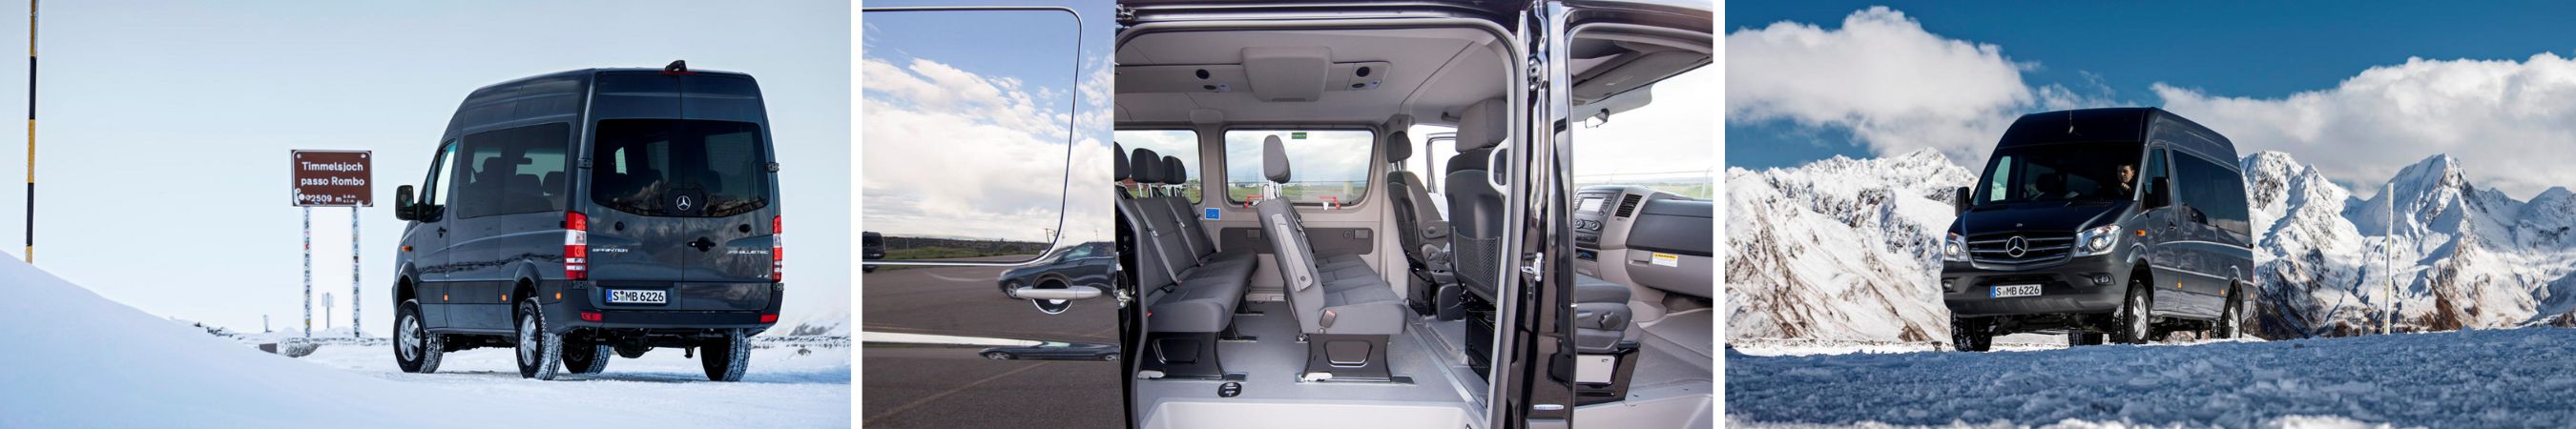 2022 Mercedes-Benz Sprinter Passenger Van For Sale Madison WI | Sun Prairie